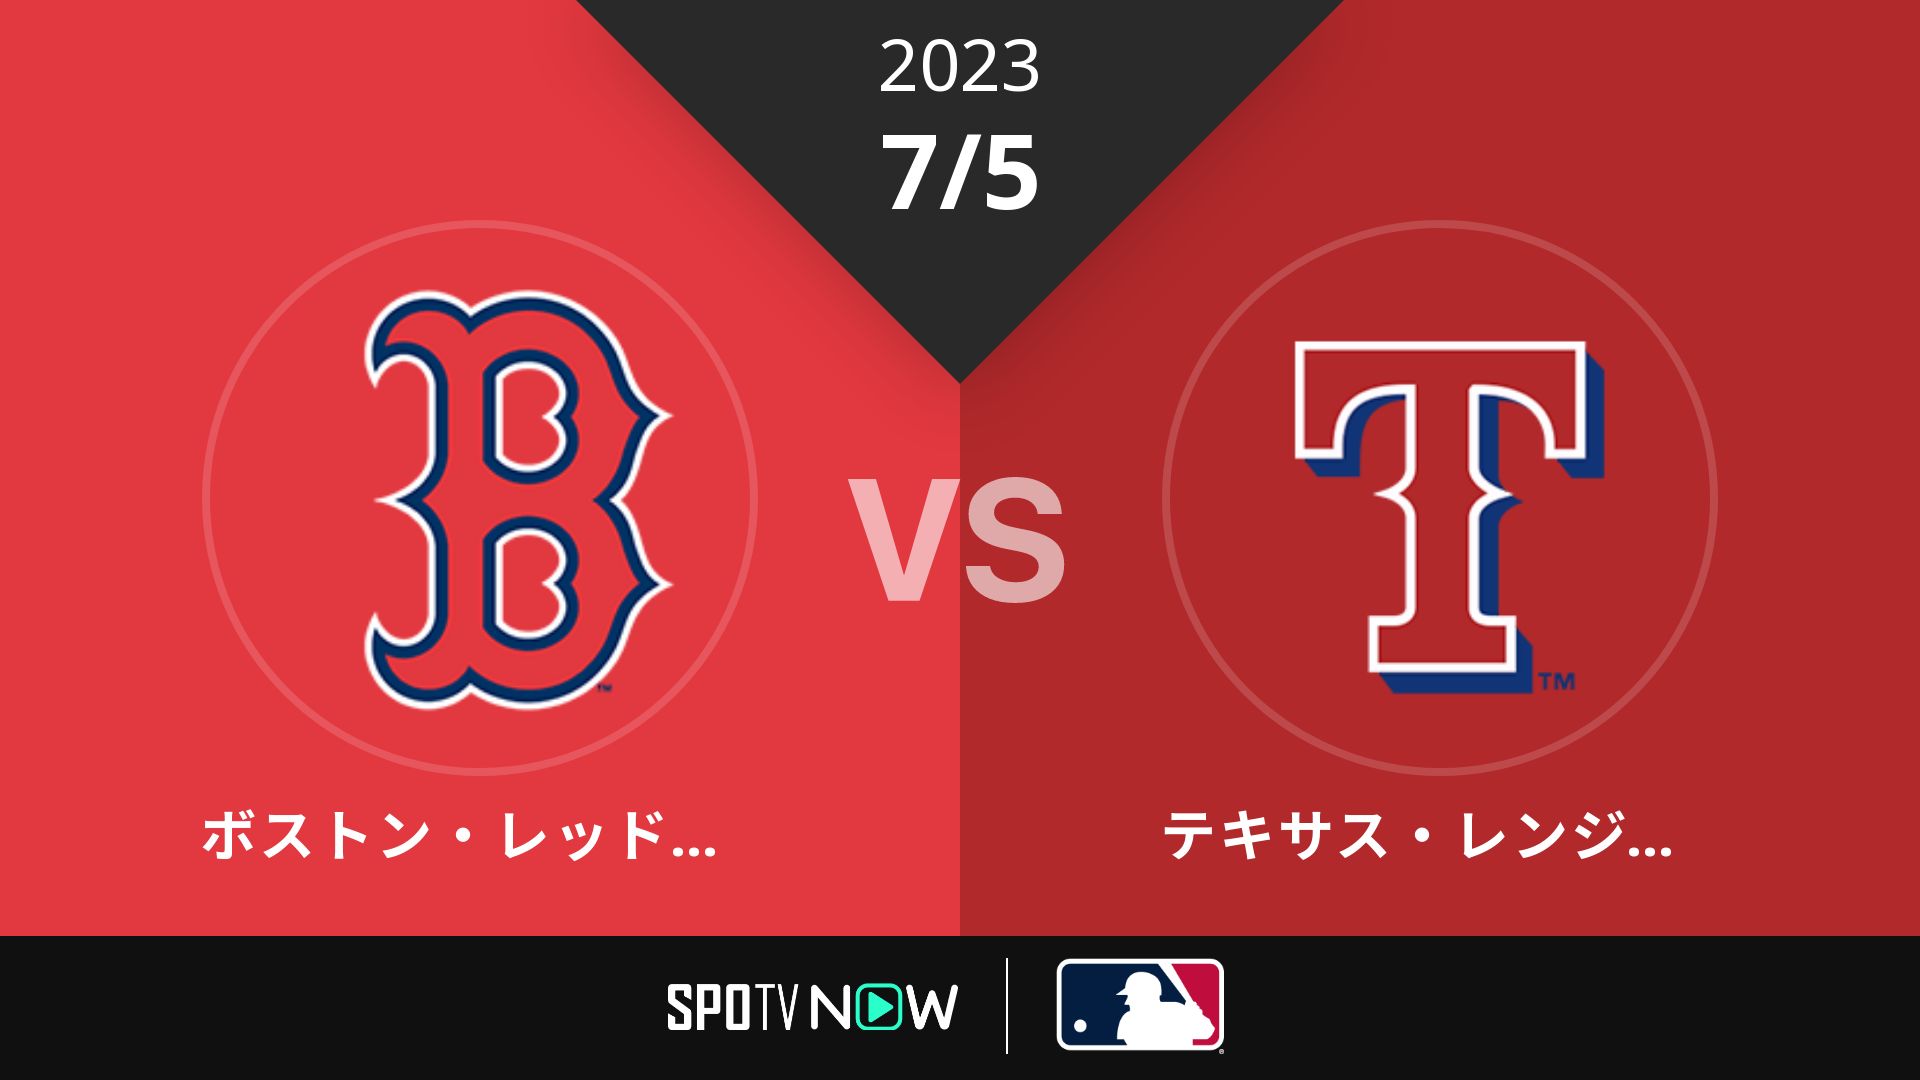 2023/7/5 Rソックス vs レンジャーズ [MLB]